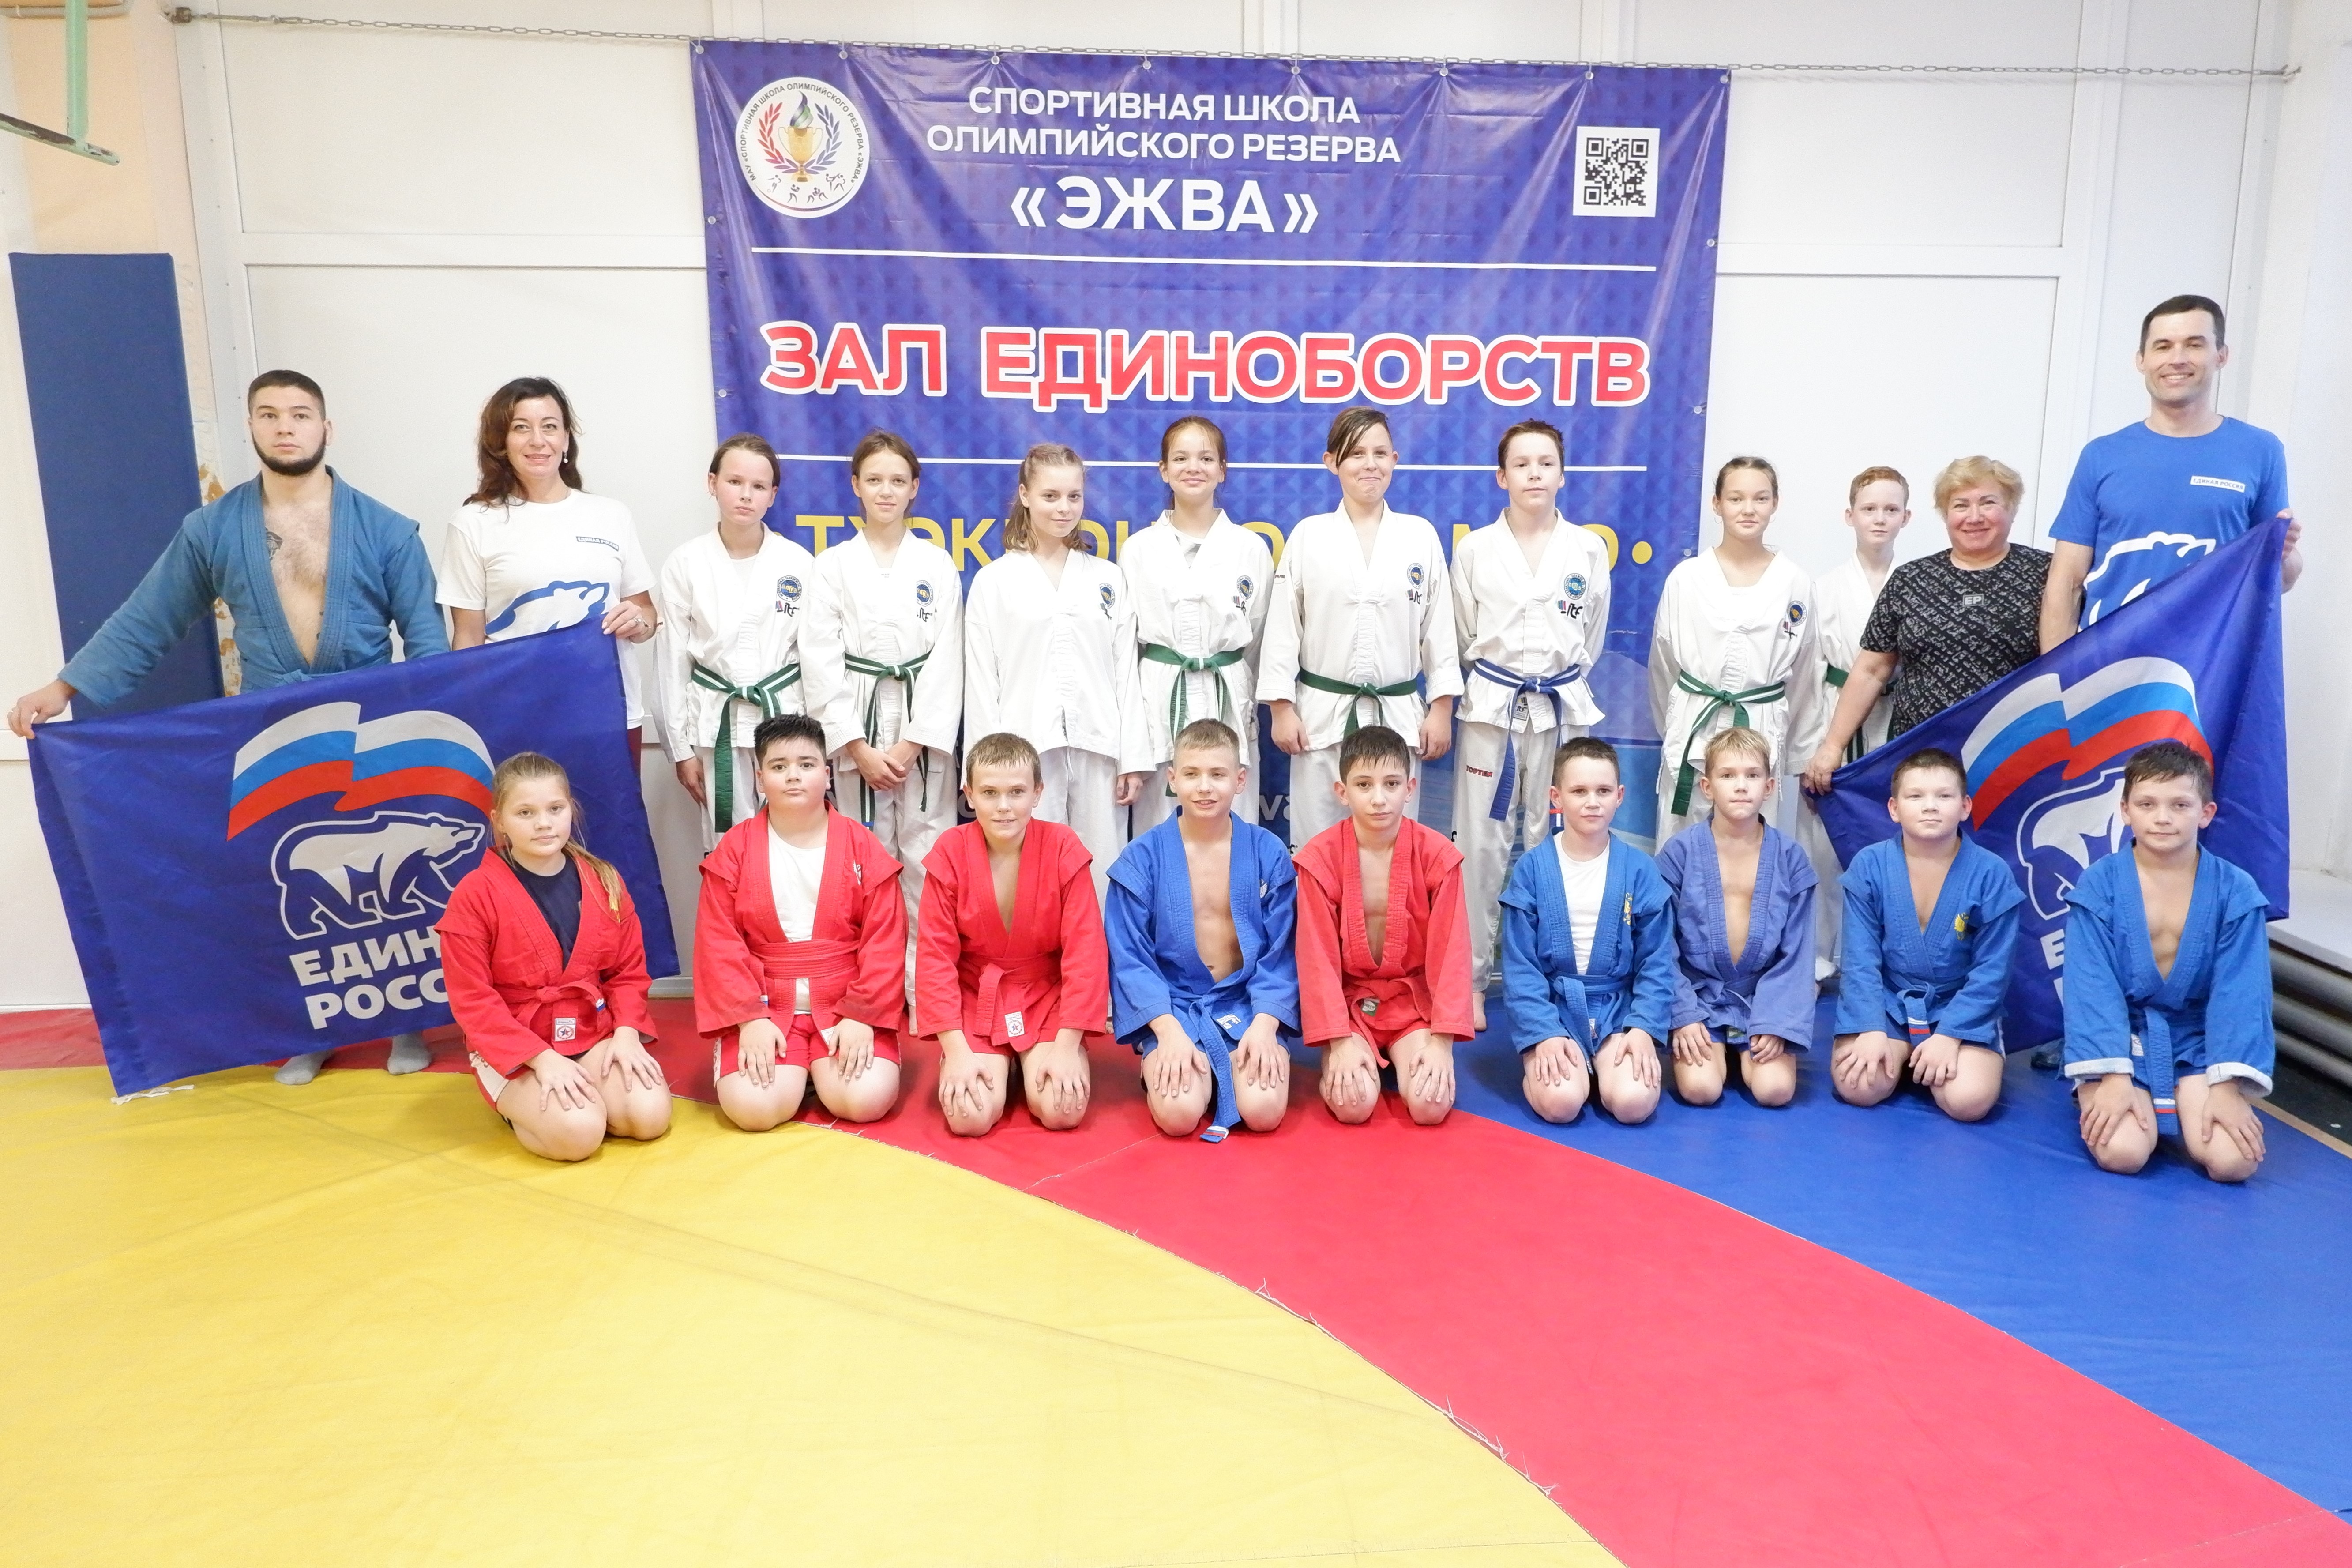 Сразу в двух школах Сыктывкара прошли открытые тренировки по самбо